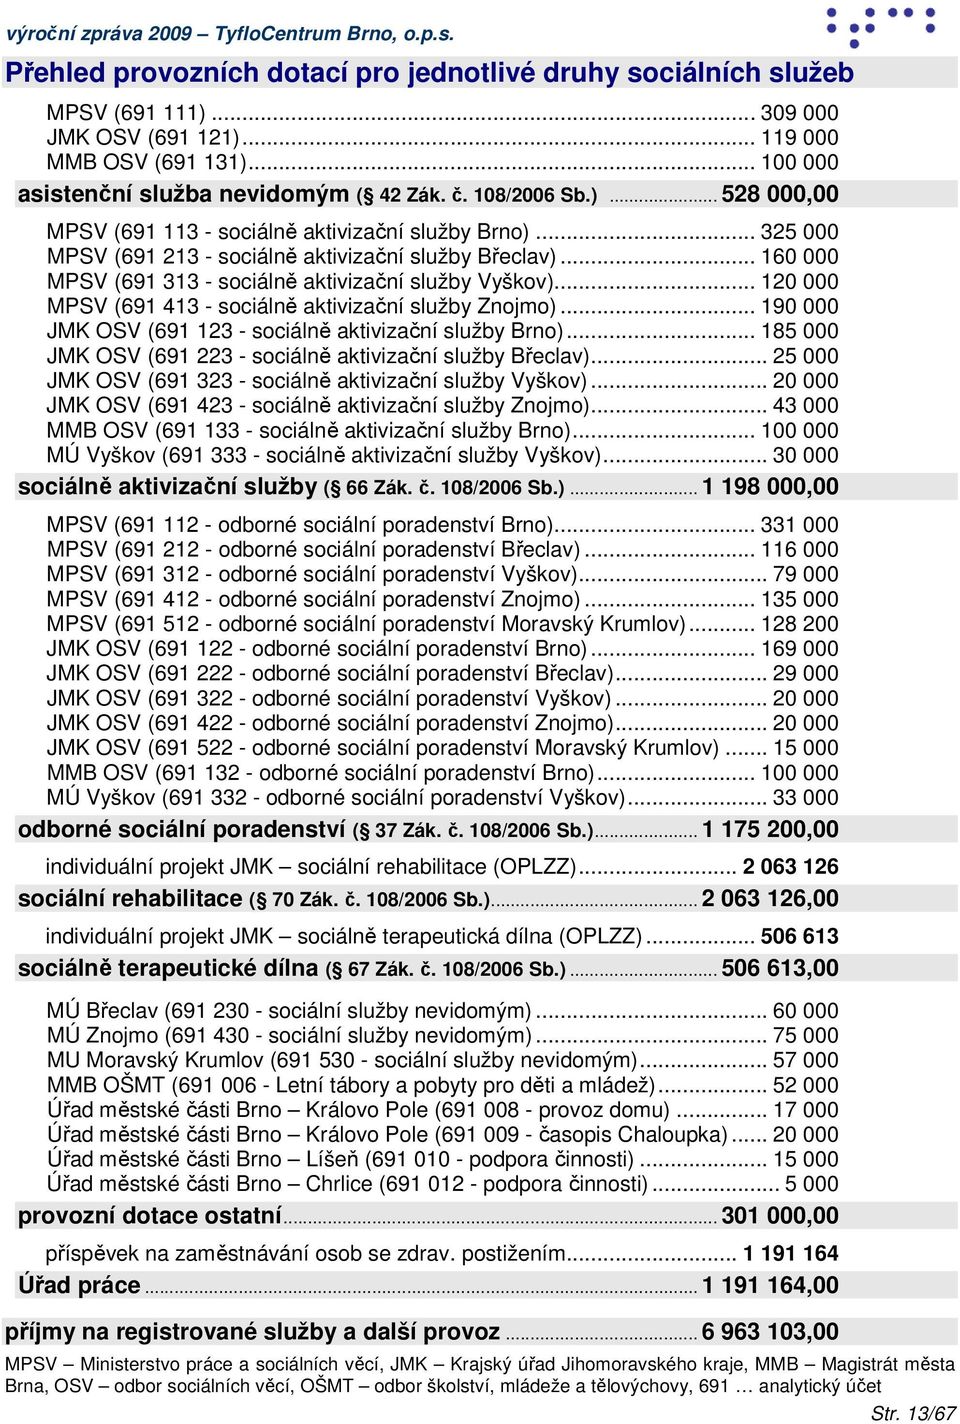 .. 160 000 MPSV (691 313 - sociálně aktivizační služby Vyškov)... 120 000 MPSV (691 413 - sociálně aktivizační služby Znojmo)... 190 000 JMK OSV (691 123 - sociálně aktivizační služby Brno).